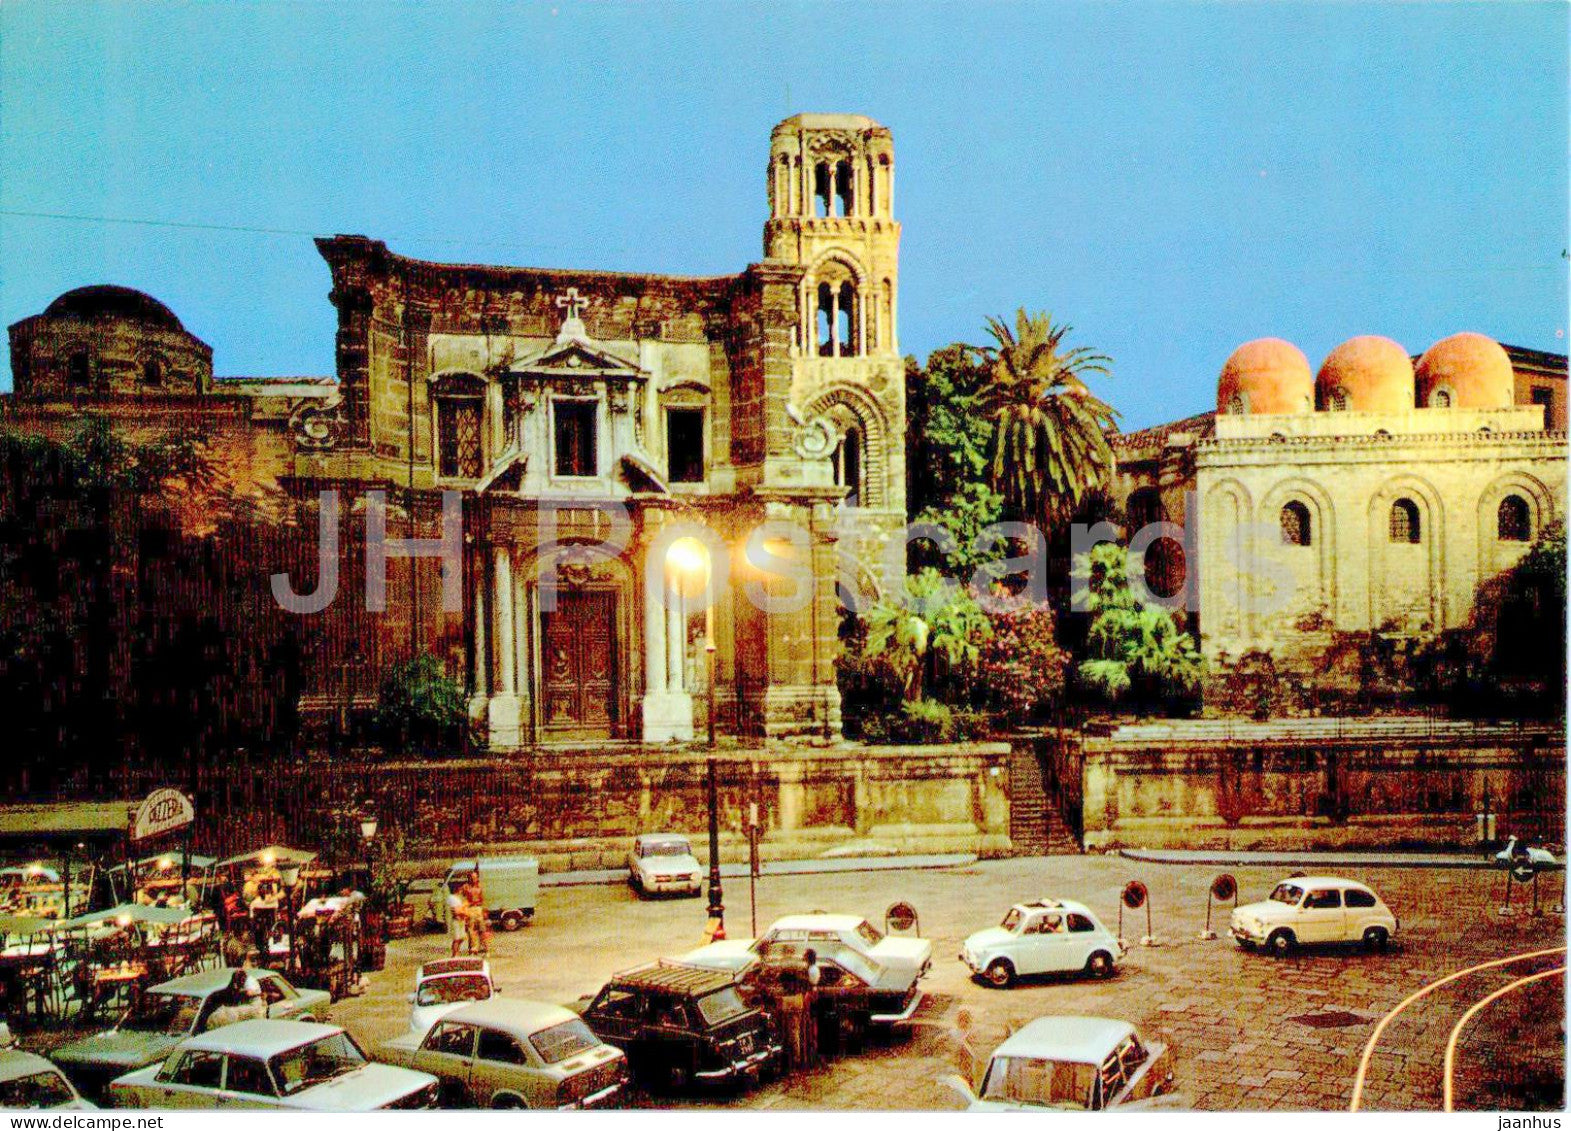 Palermo - Chiesa della Martorana - church - car - 166 - Italy - unused - JH Postcards